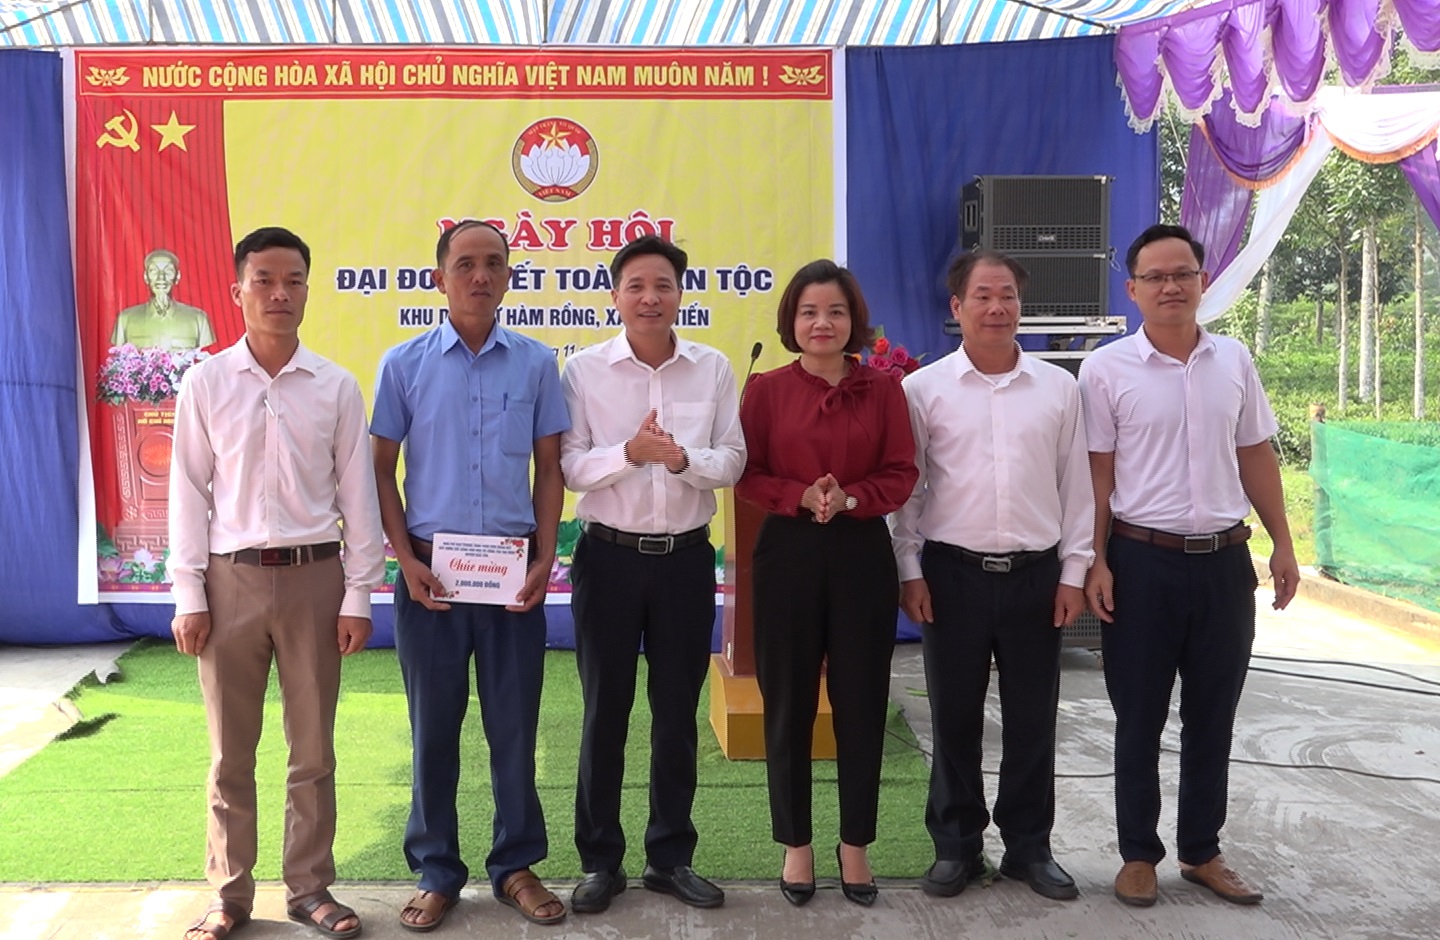 Trưởng ban Tổ chức Huyện ủy Phạm Duy Thịnh cùng lãnh đạo Hội LHPN, Hội Nông dân huyện tặng quà cho thôn Hàm Rồng